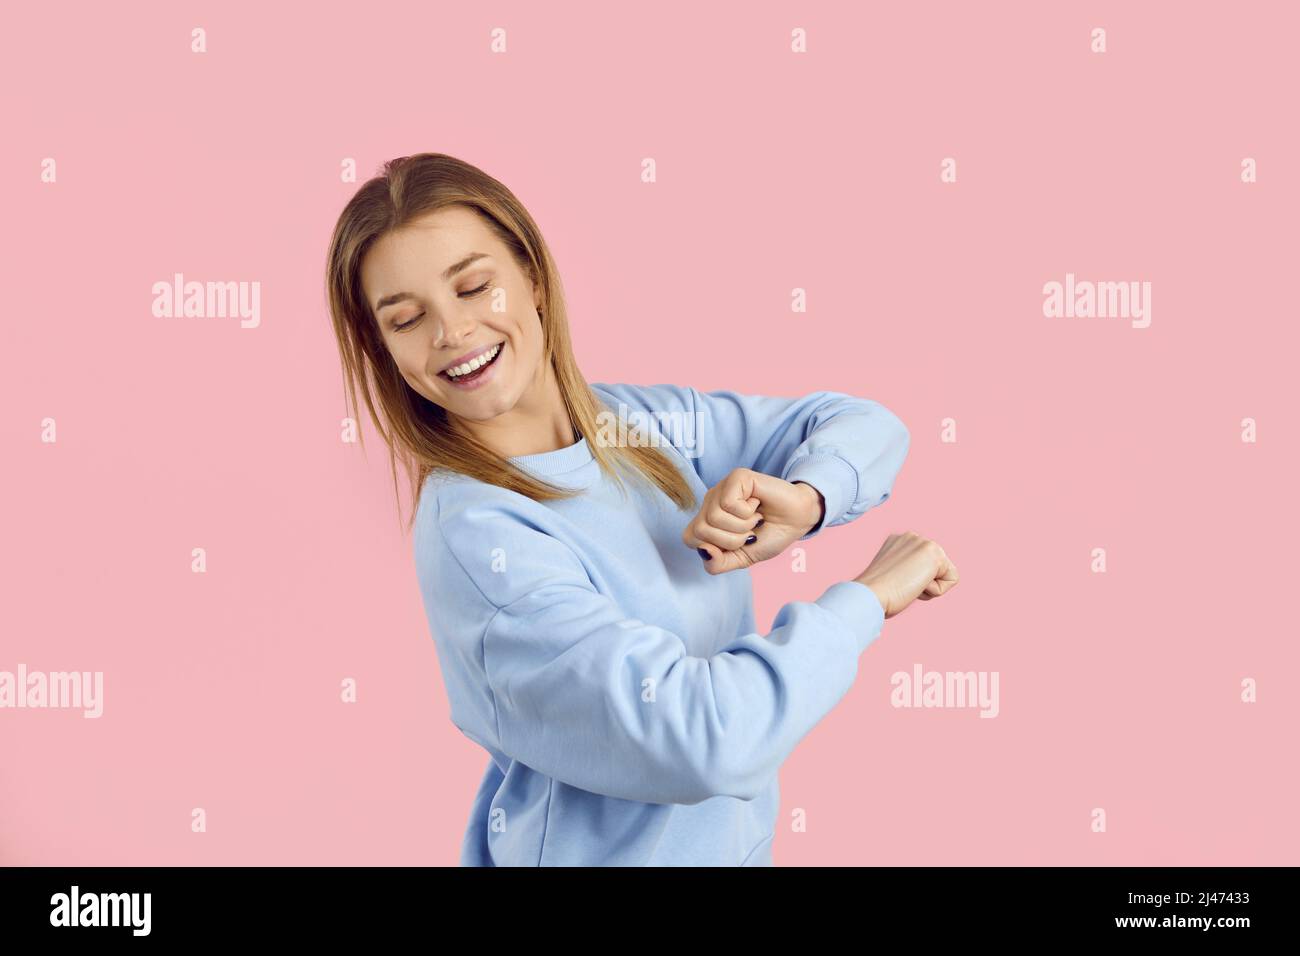 Porträt eines glücklichen jungen Mädchens, das zu moderner Musik auf einem rosa Studiohintergrund tanzt Stockfoto